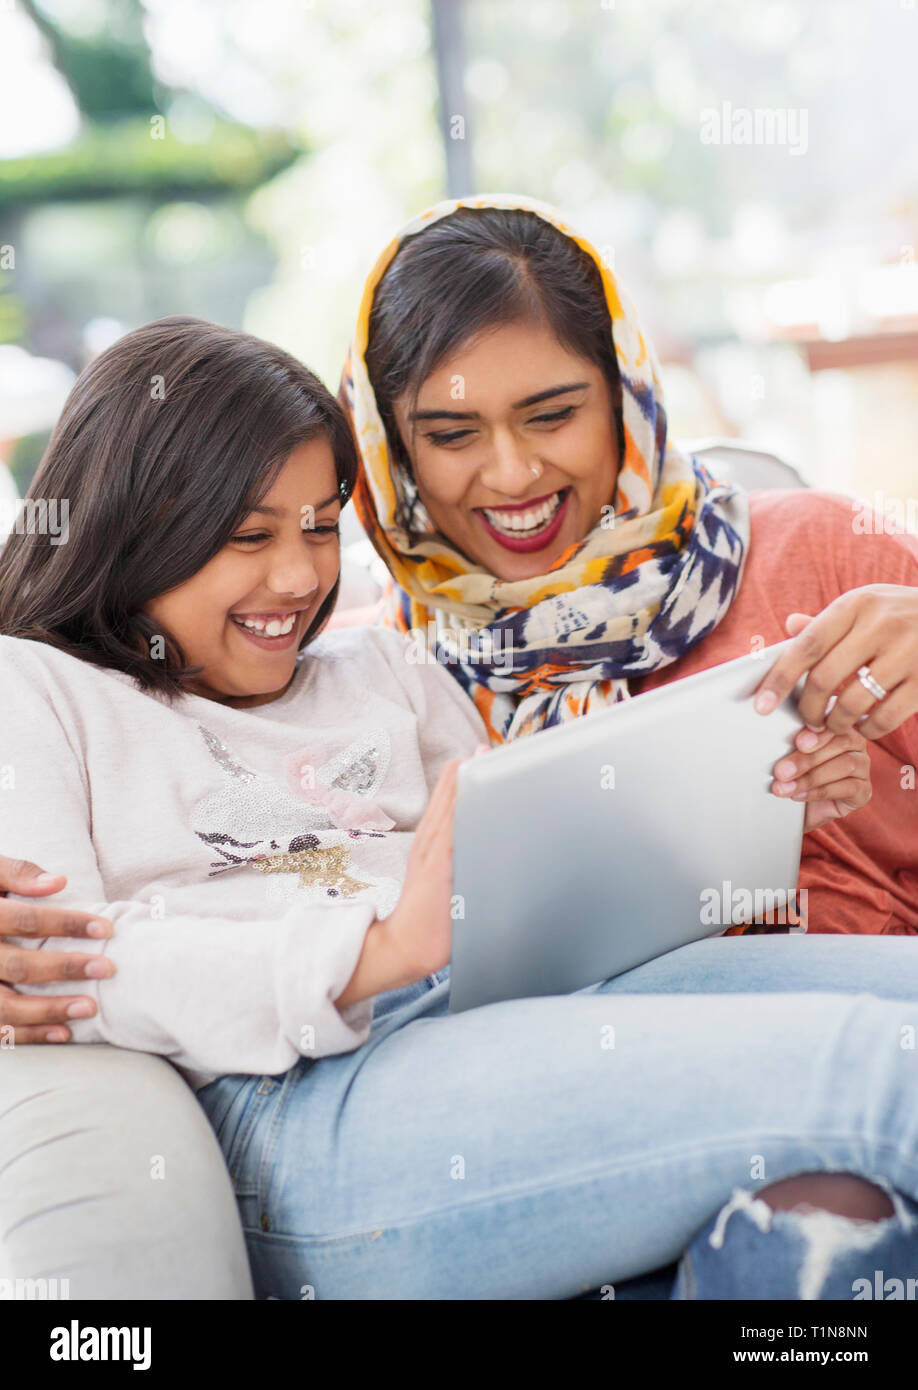 Lachen, glücklich, Mutter im hijab und Verwendung digitaler tablet Tochter Stockfoto